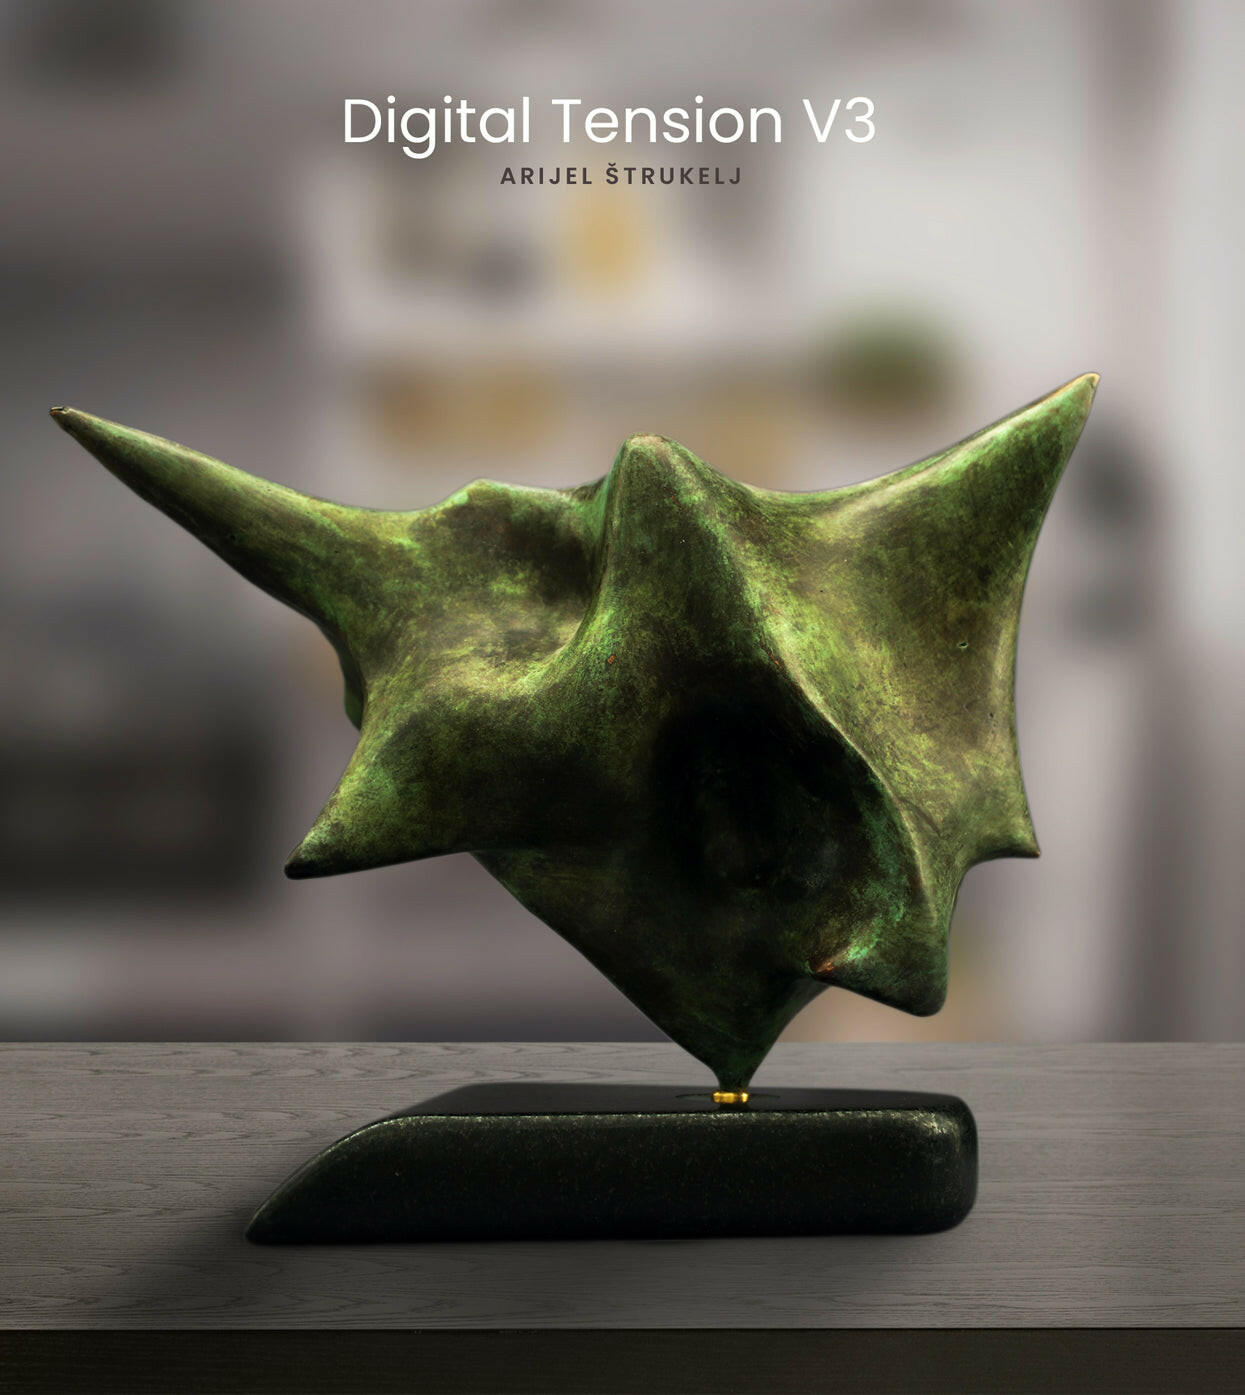 Digital Tension V3